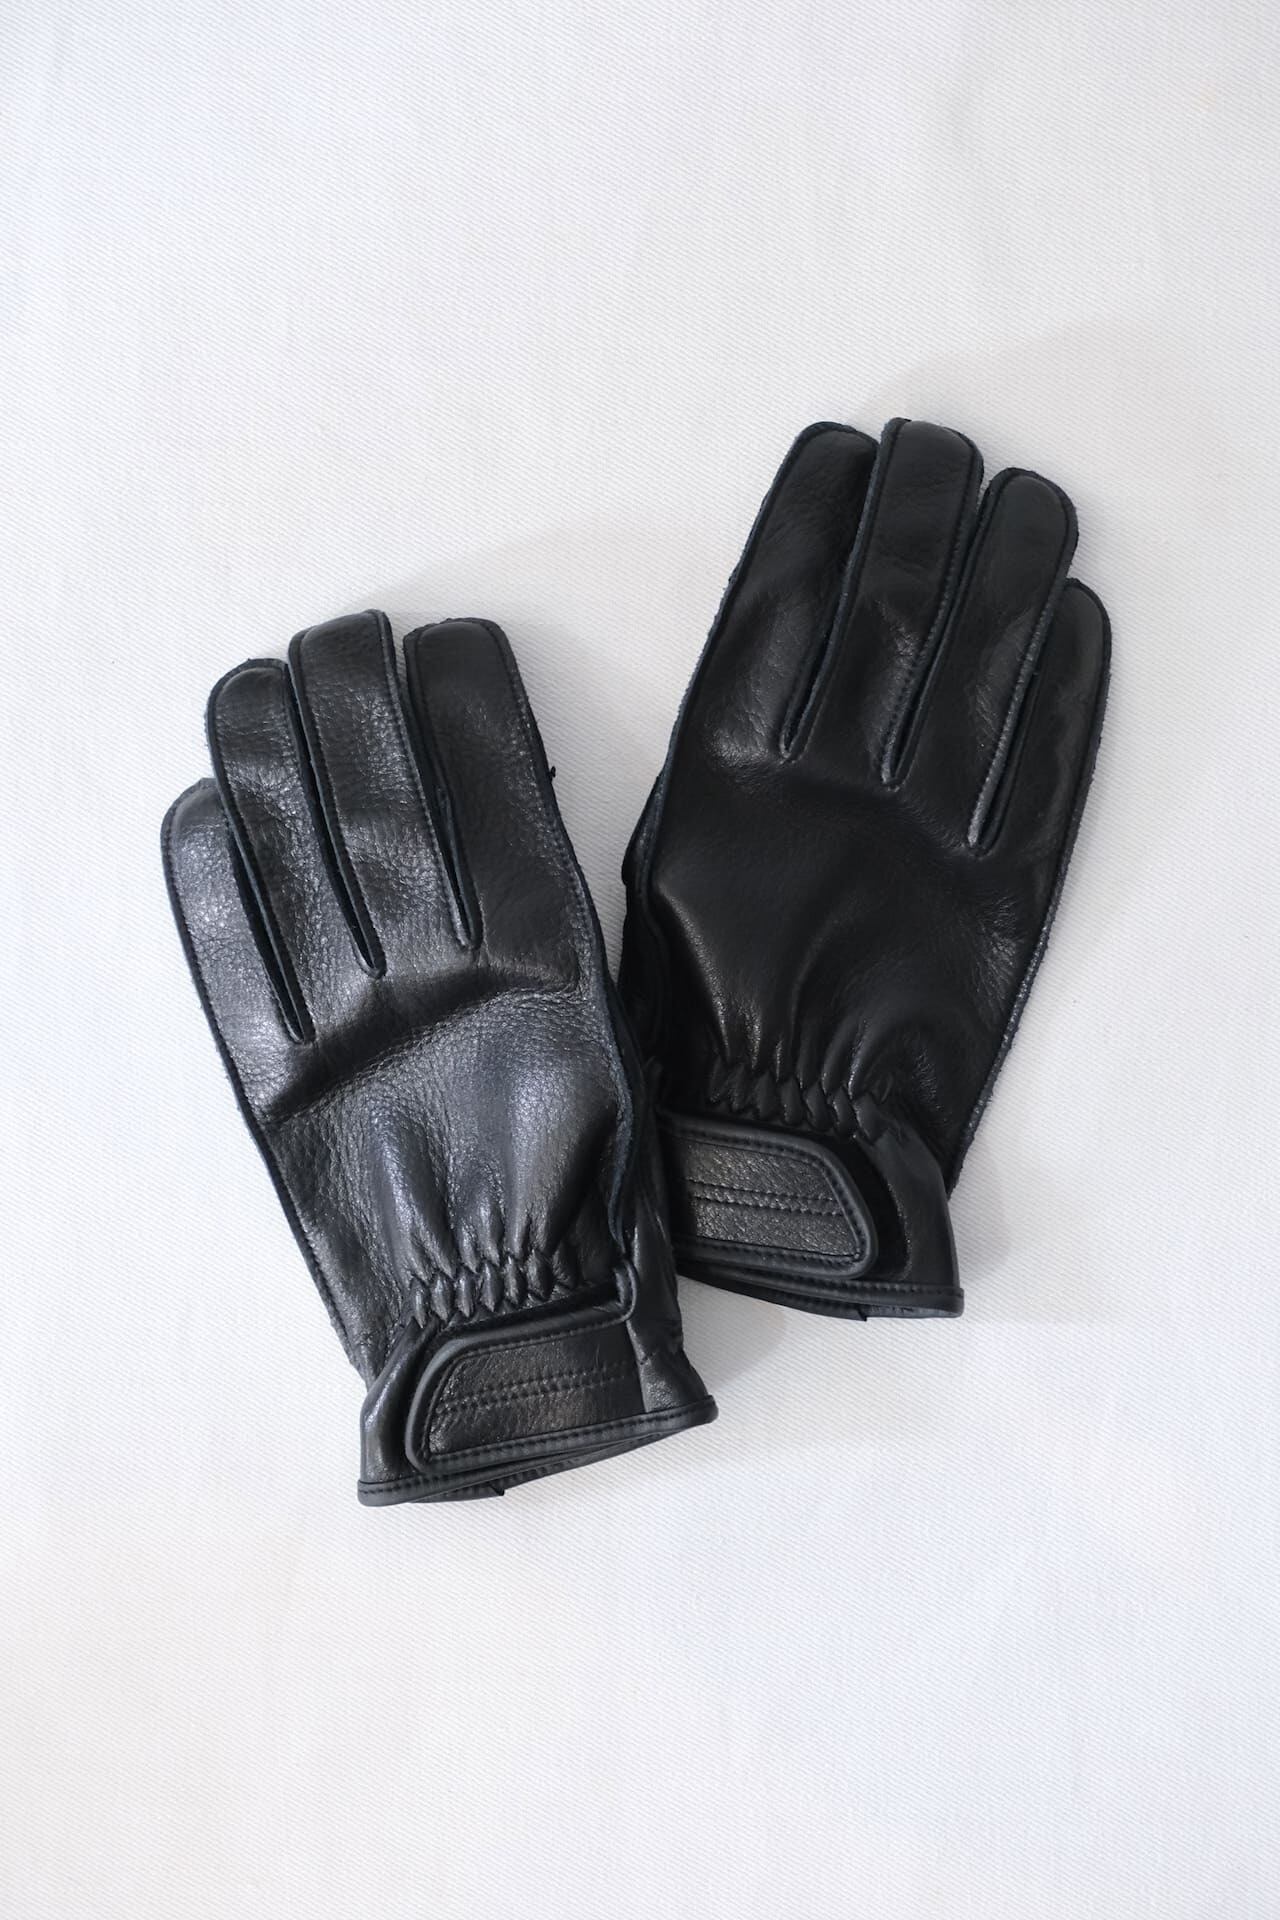 N.O.UN Black Lane Glove　Black